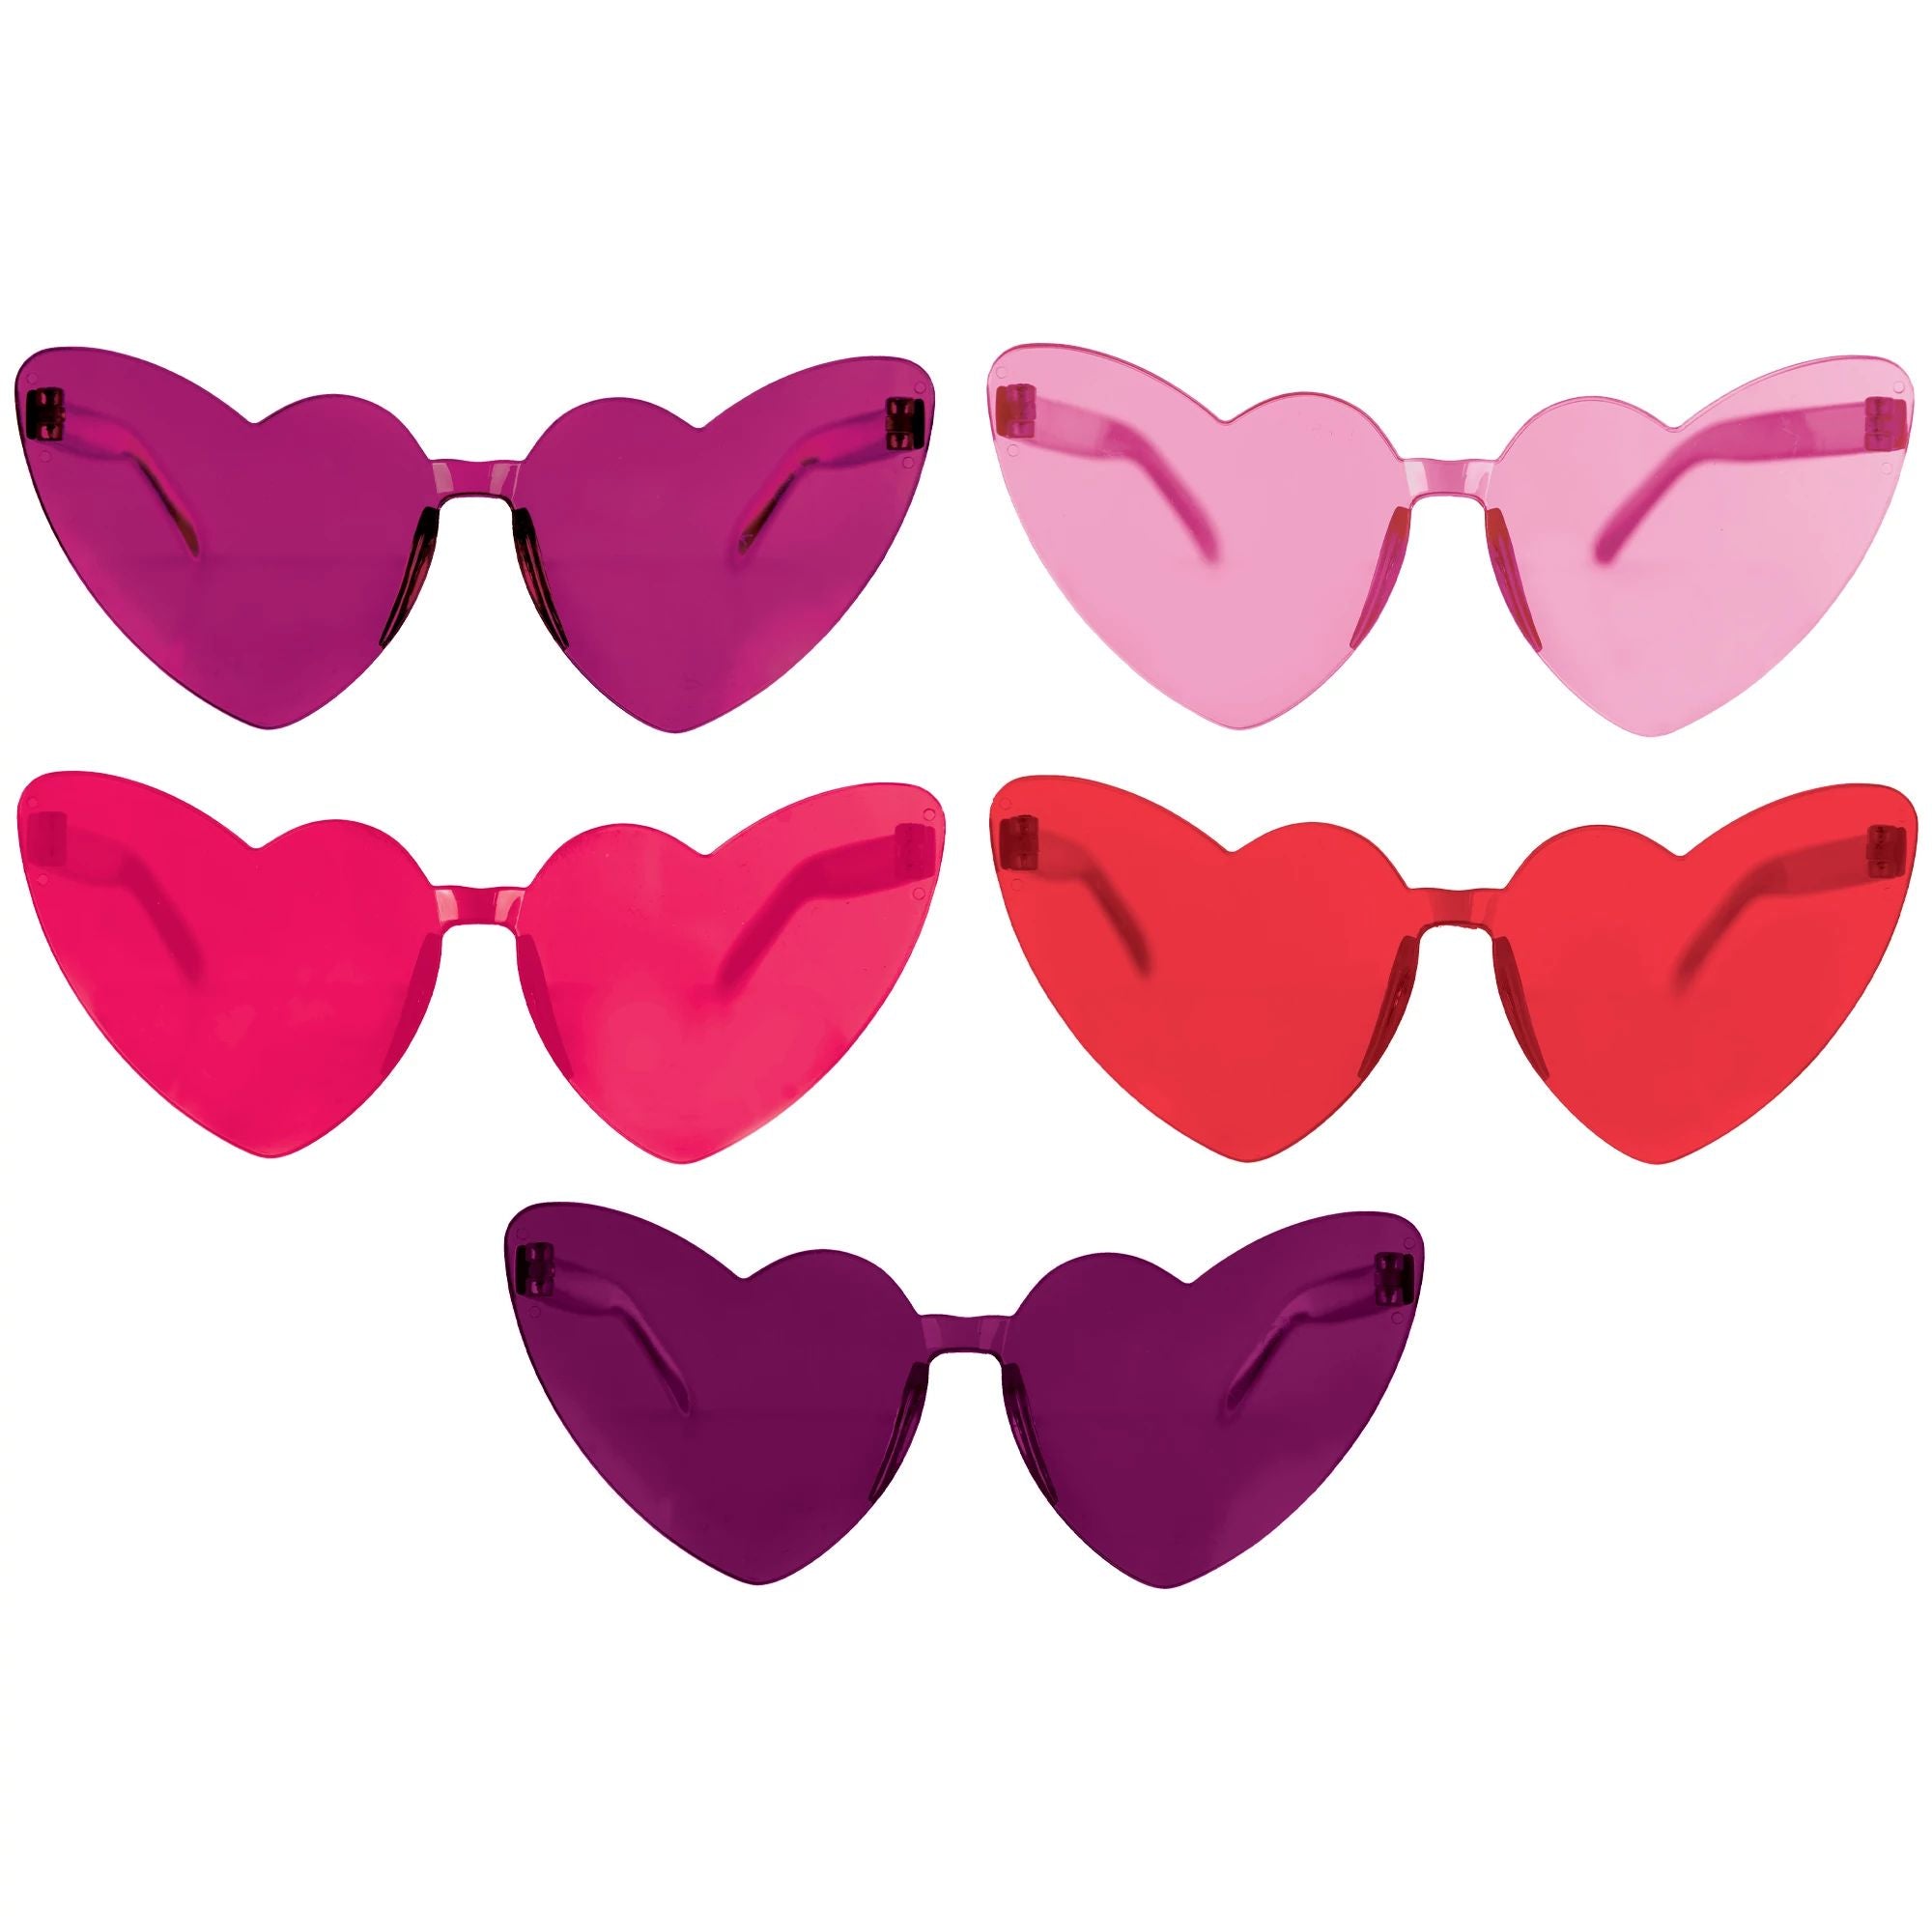 Heart Glasses Mutli-Pack